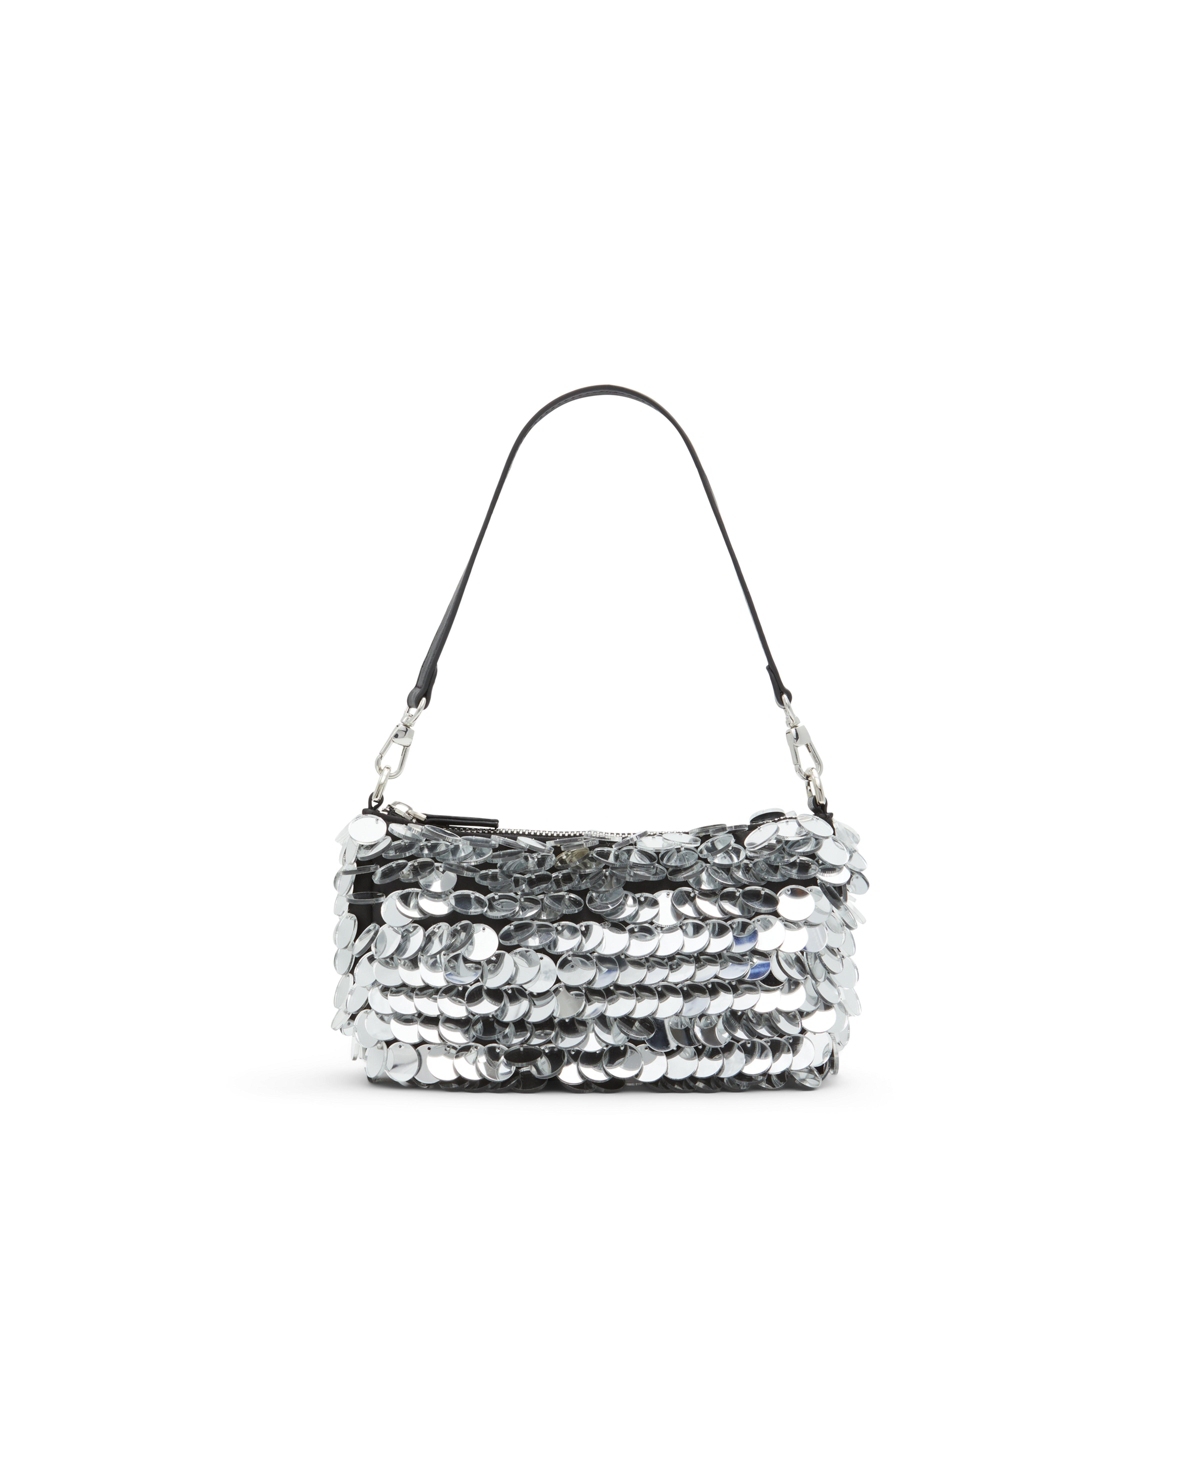 Sequina Women's Dress Handbags - Light Silver